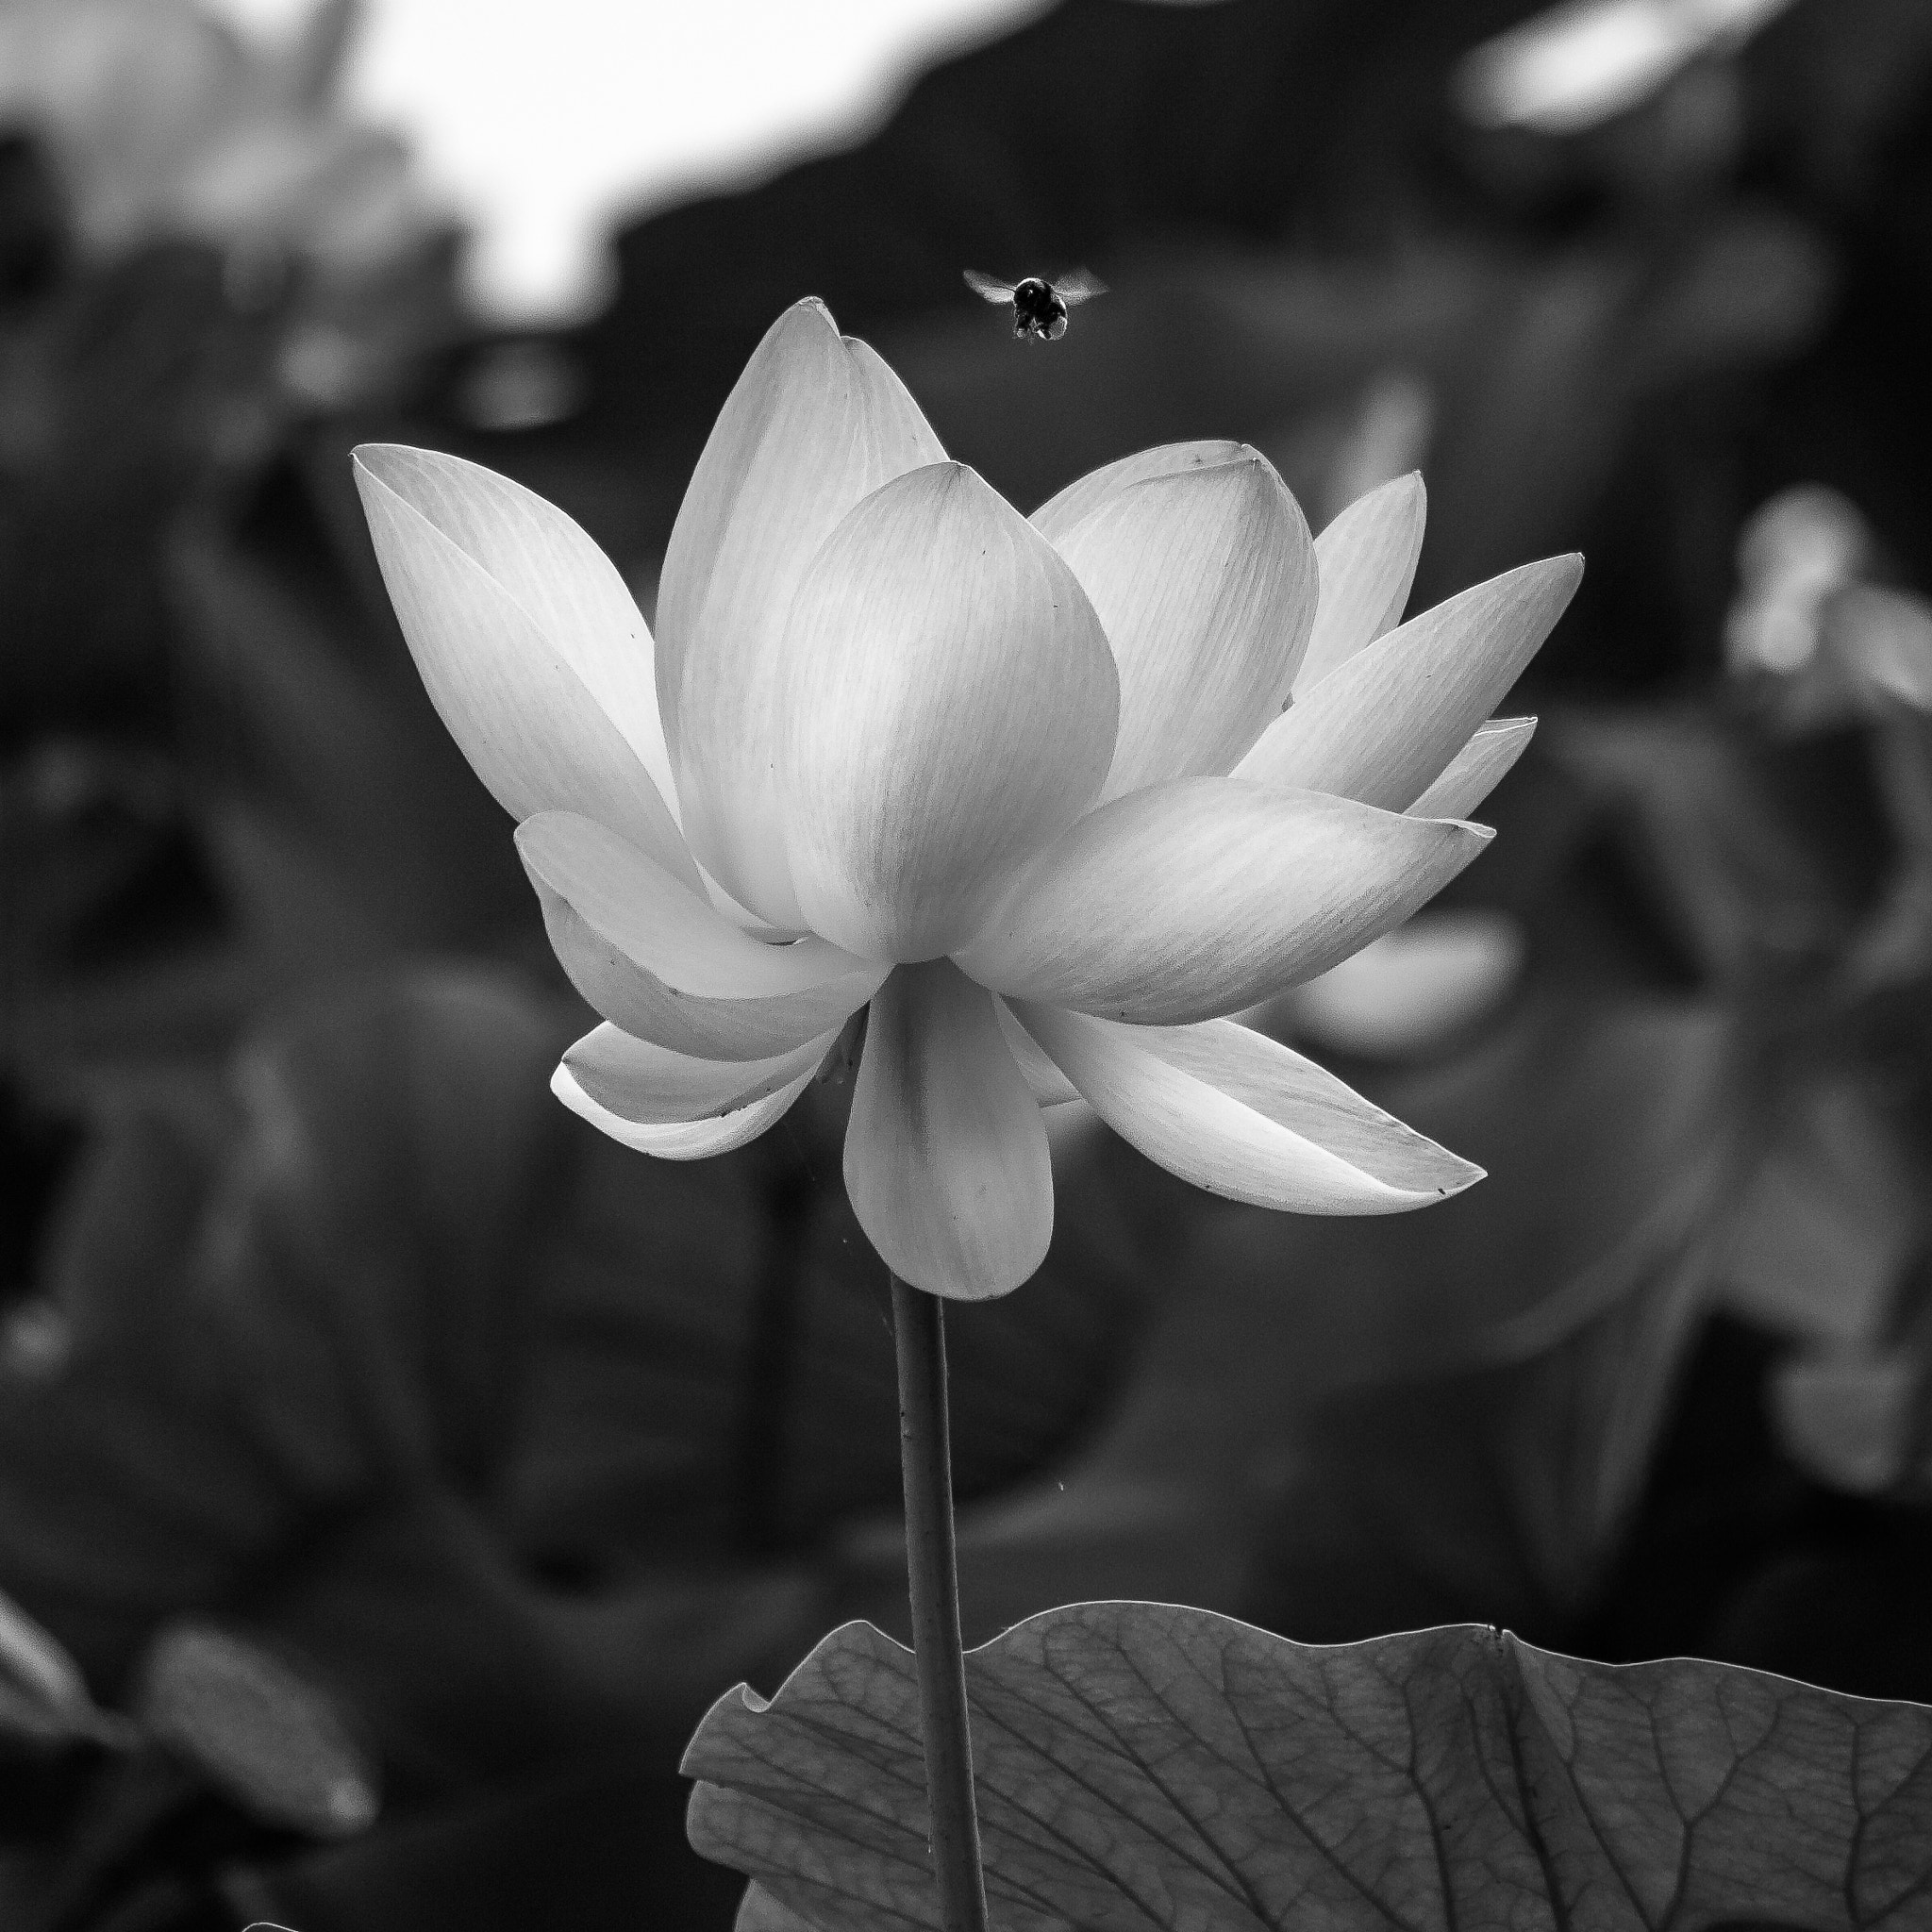 Pentax K-7 sample photo. Lotus flower photography